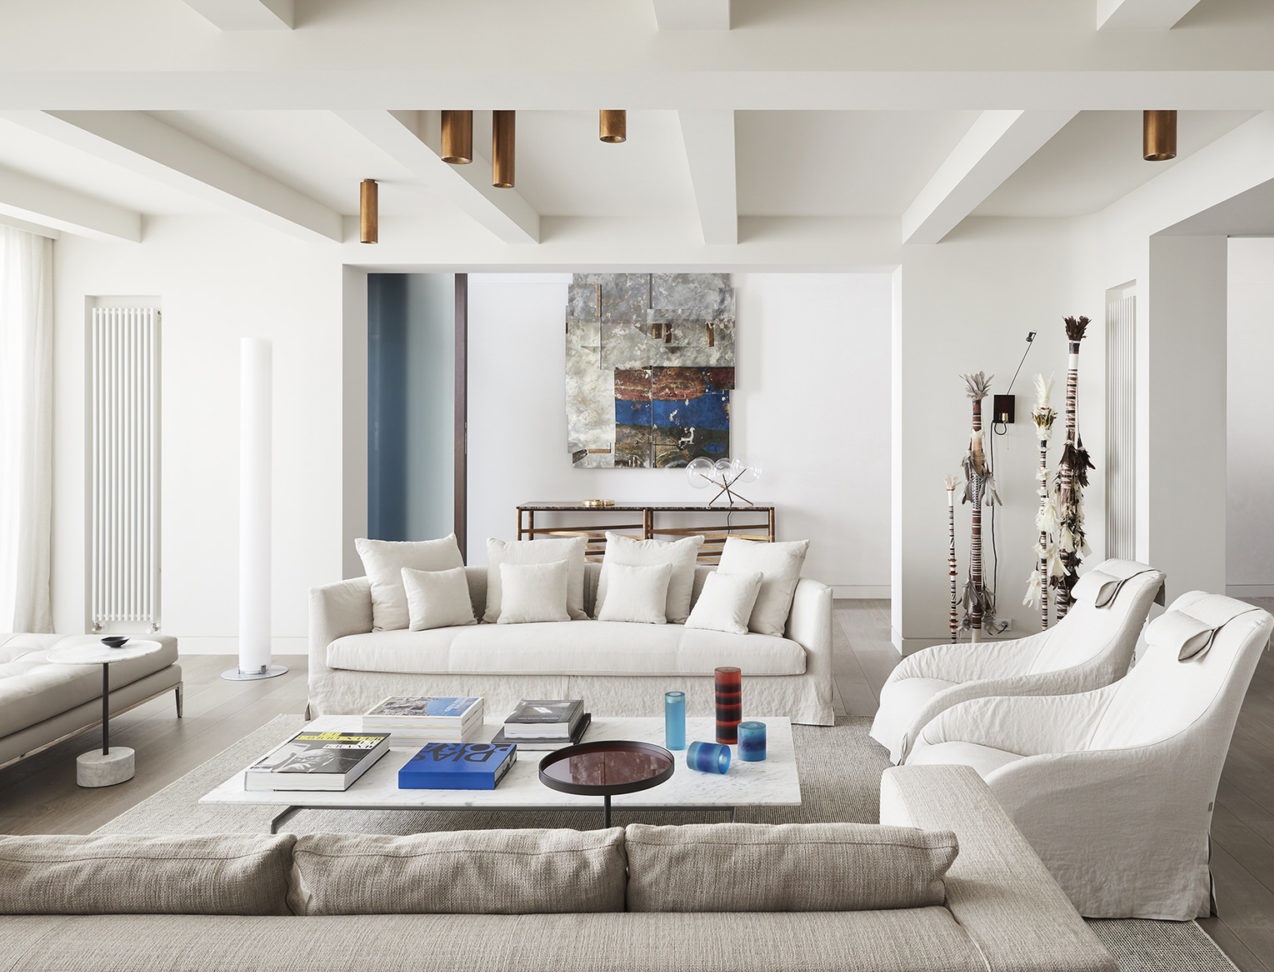 Một không gian tiếp khách phụ được bày trí không thua kém gì nội thất của phòng khách chính, với những bộ ghế sofa và ghế bành êm ái, sắc màu trắng - xám nhẹ nhàng, xếp đặt trên một tấm thảm cỡ lớn. 